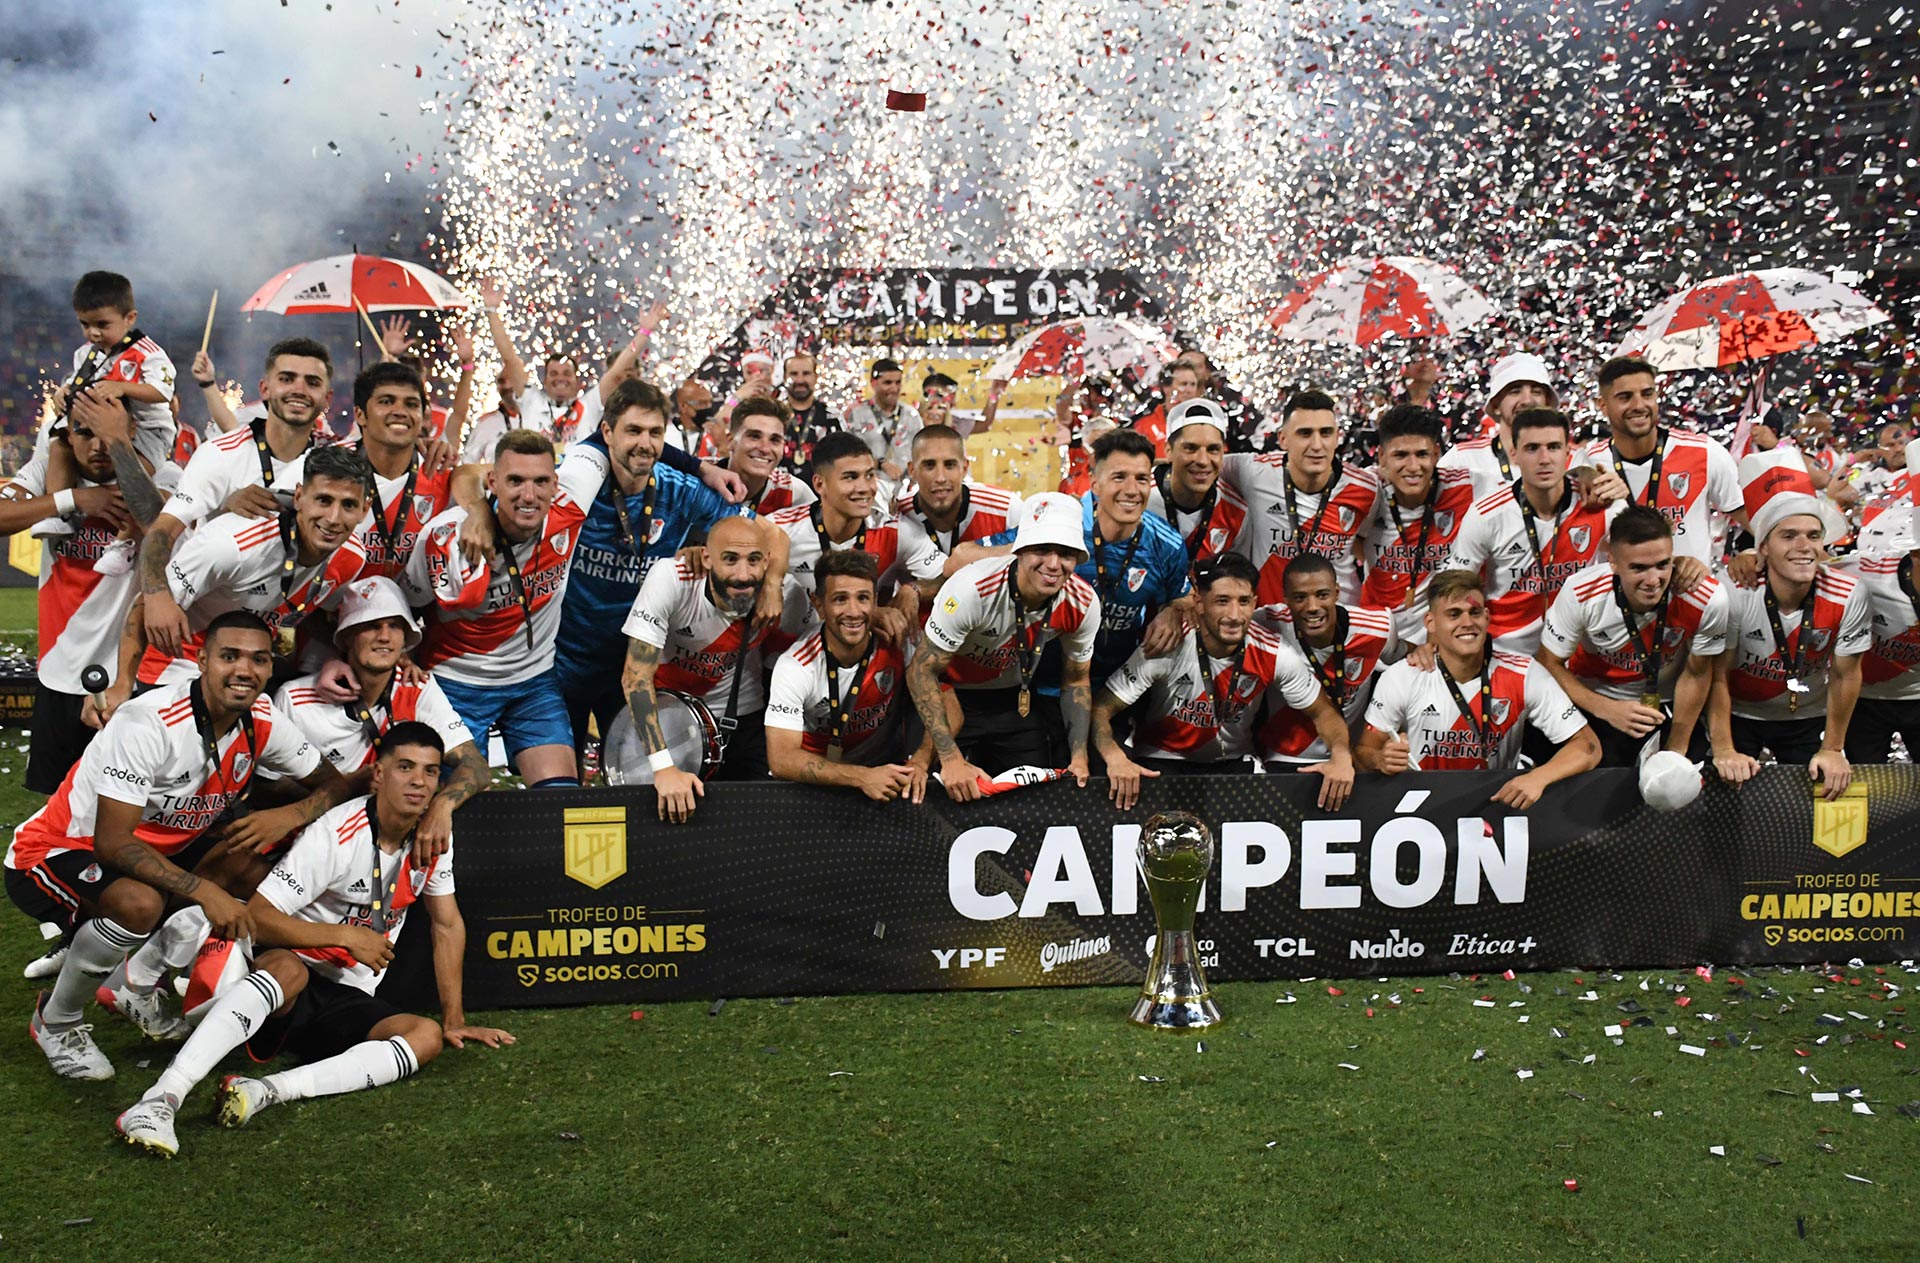 River, campeón de la Liga Profesional y el Trofeo de Campeones, debutará ante Unión de Santa Fe @fotobairesarg